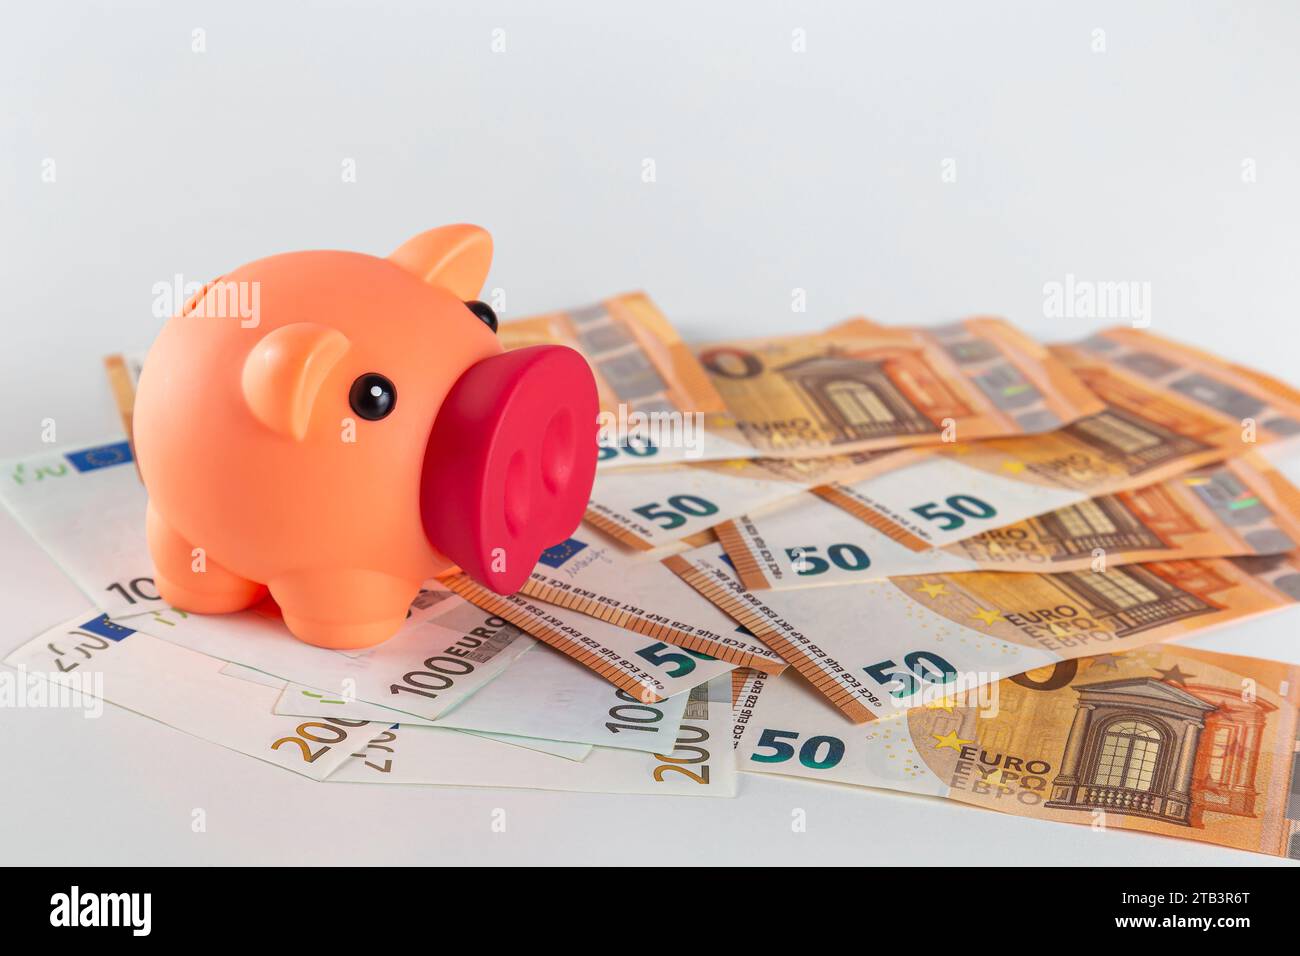 Eine pinkfarbene Schweinebank steht auf einem Tisch, der mit einer großen Menge Euro-Banknoten auf hellem Hintergrund bedeckt ist Stockfoto